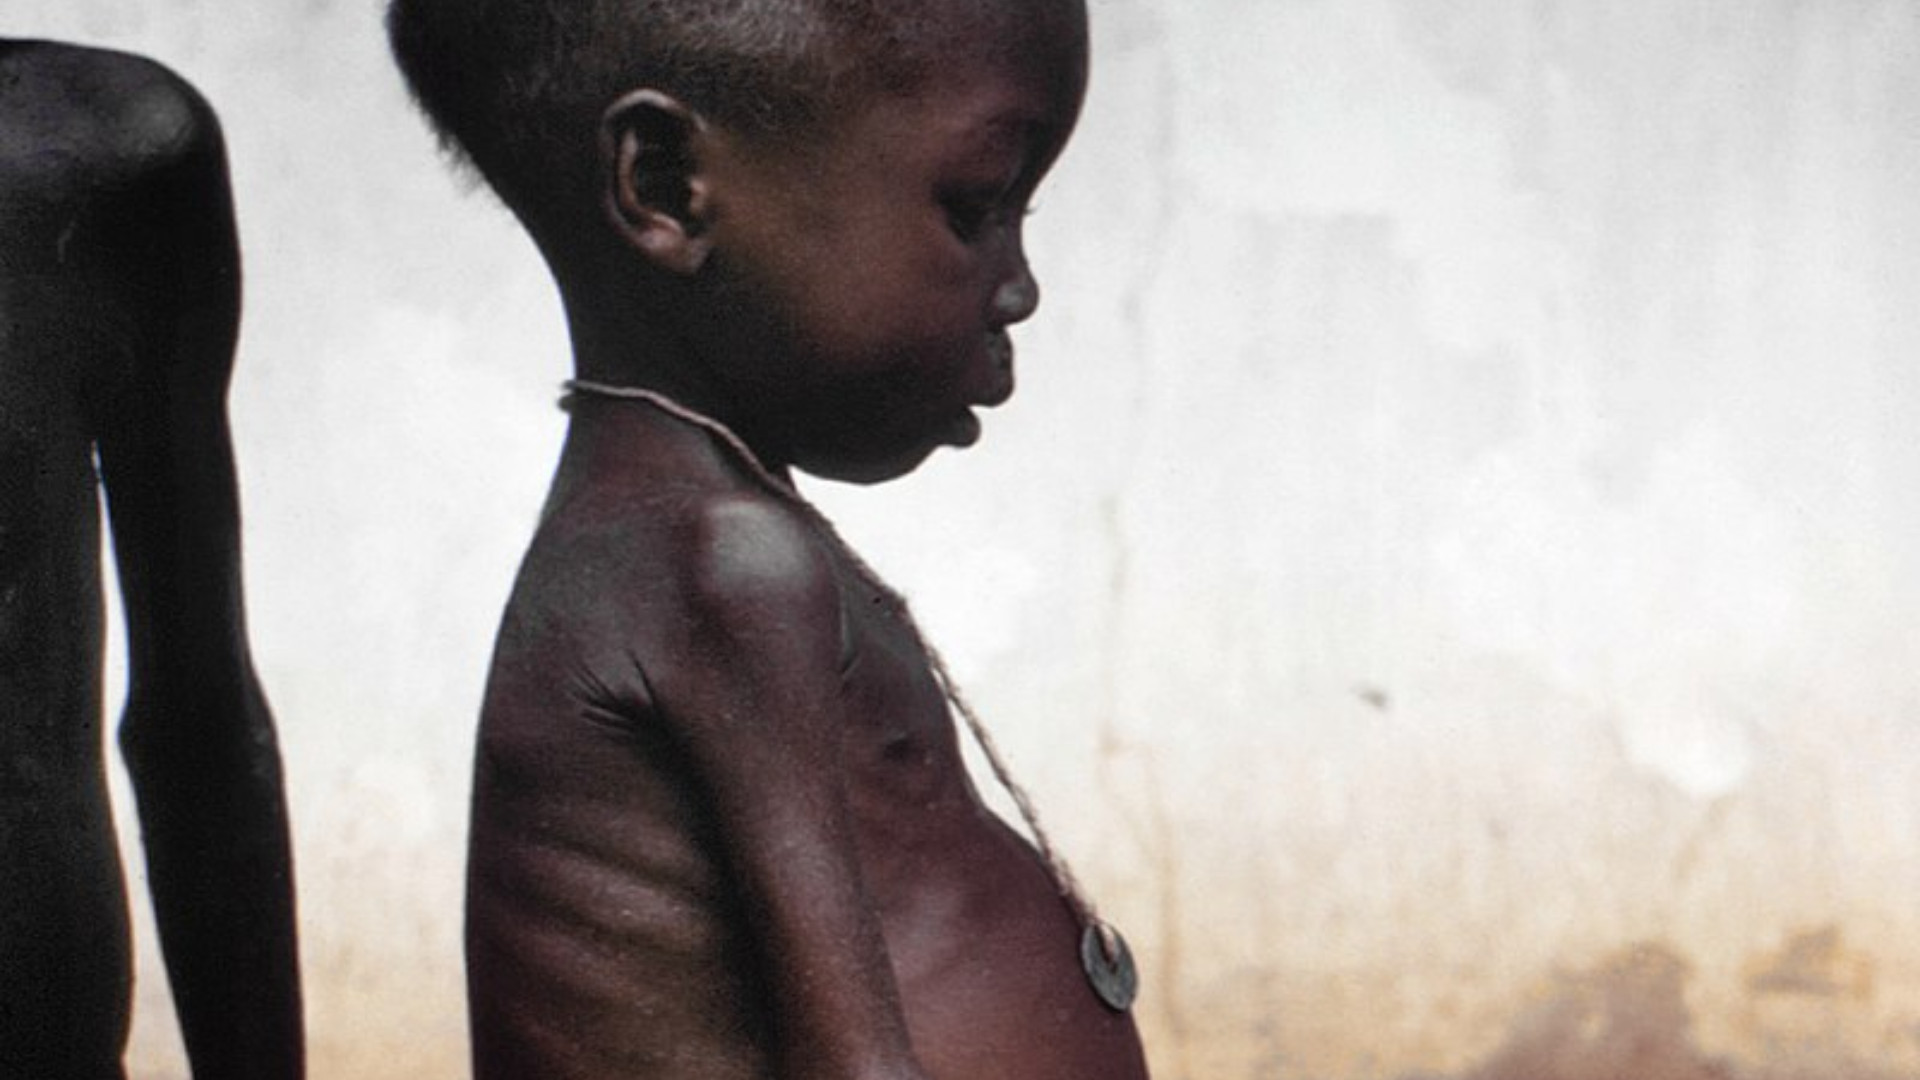 Foto de capa do artigo "Desnutrição infantil: como prevenir e tratar?"